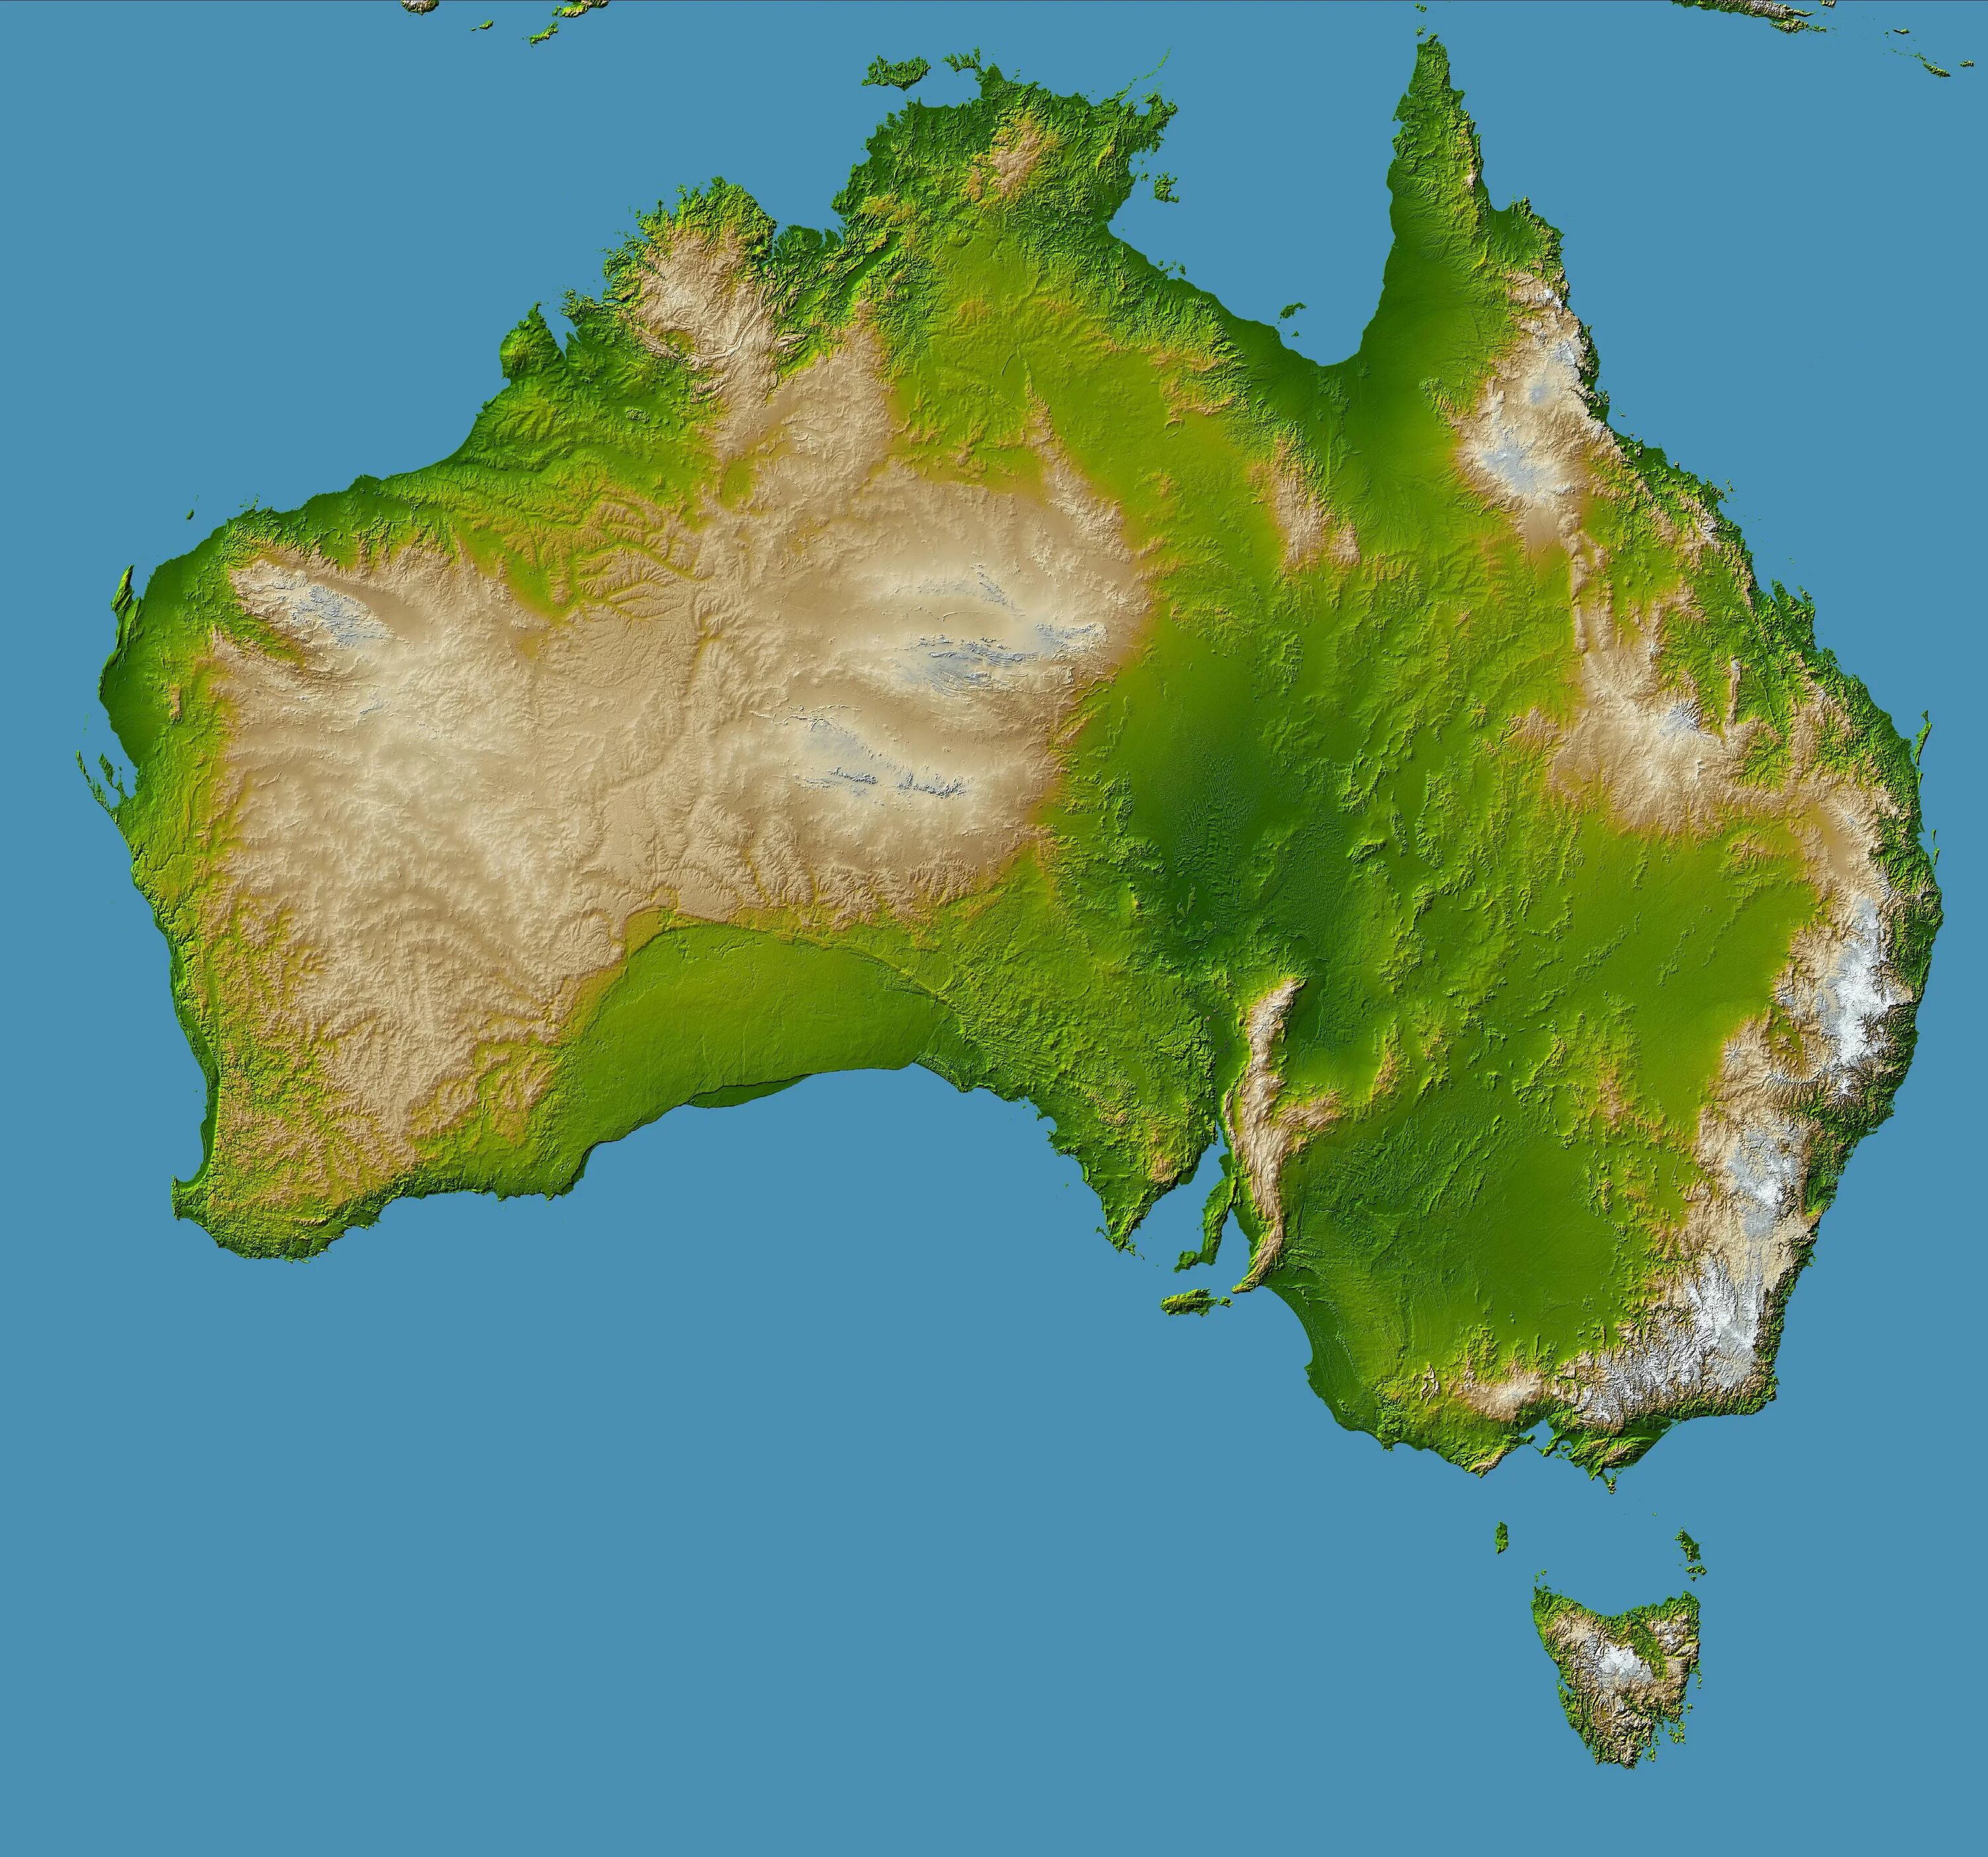 Австралия материк. Полуостров Кейп-Йорк Австралия. Полуостров Кейп-Йорк на карте Австралии. Австралия залив Карпентария. Большой водораздельный хребет полушарие